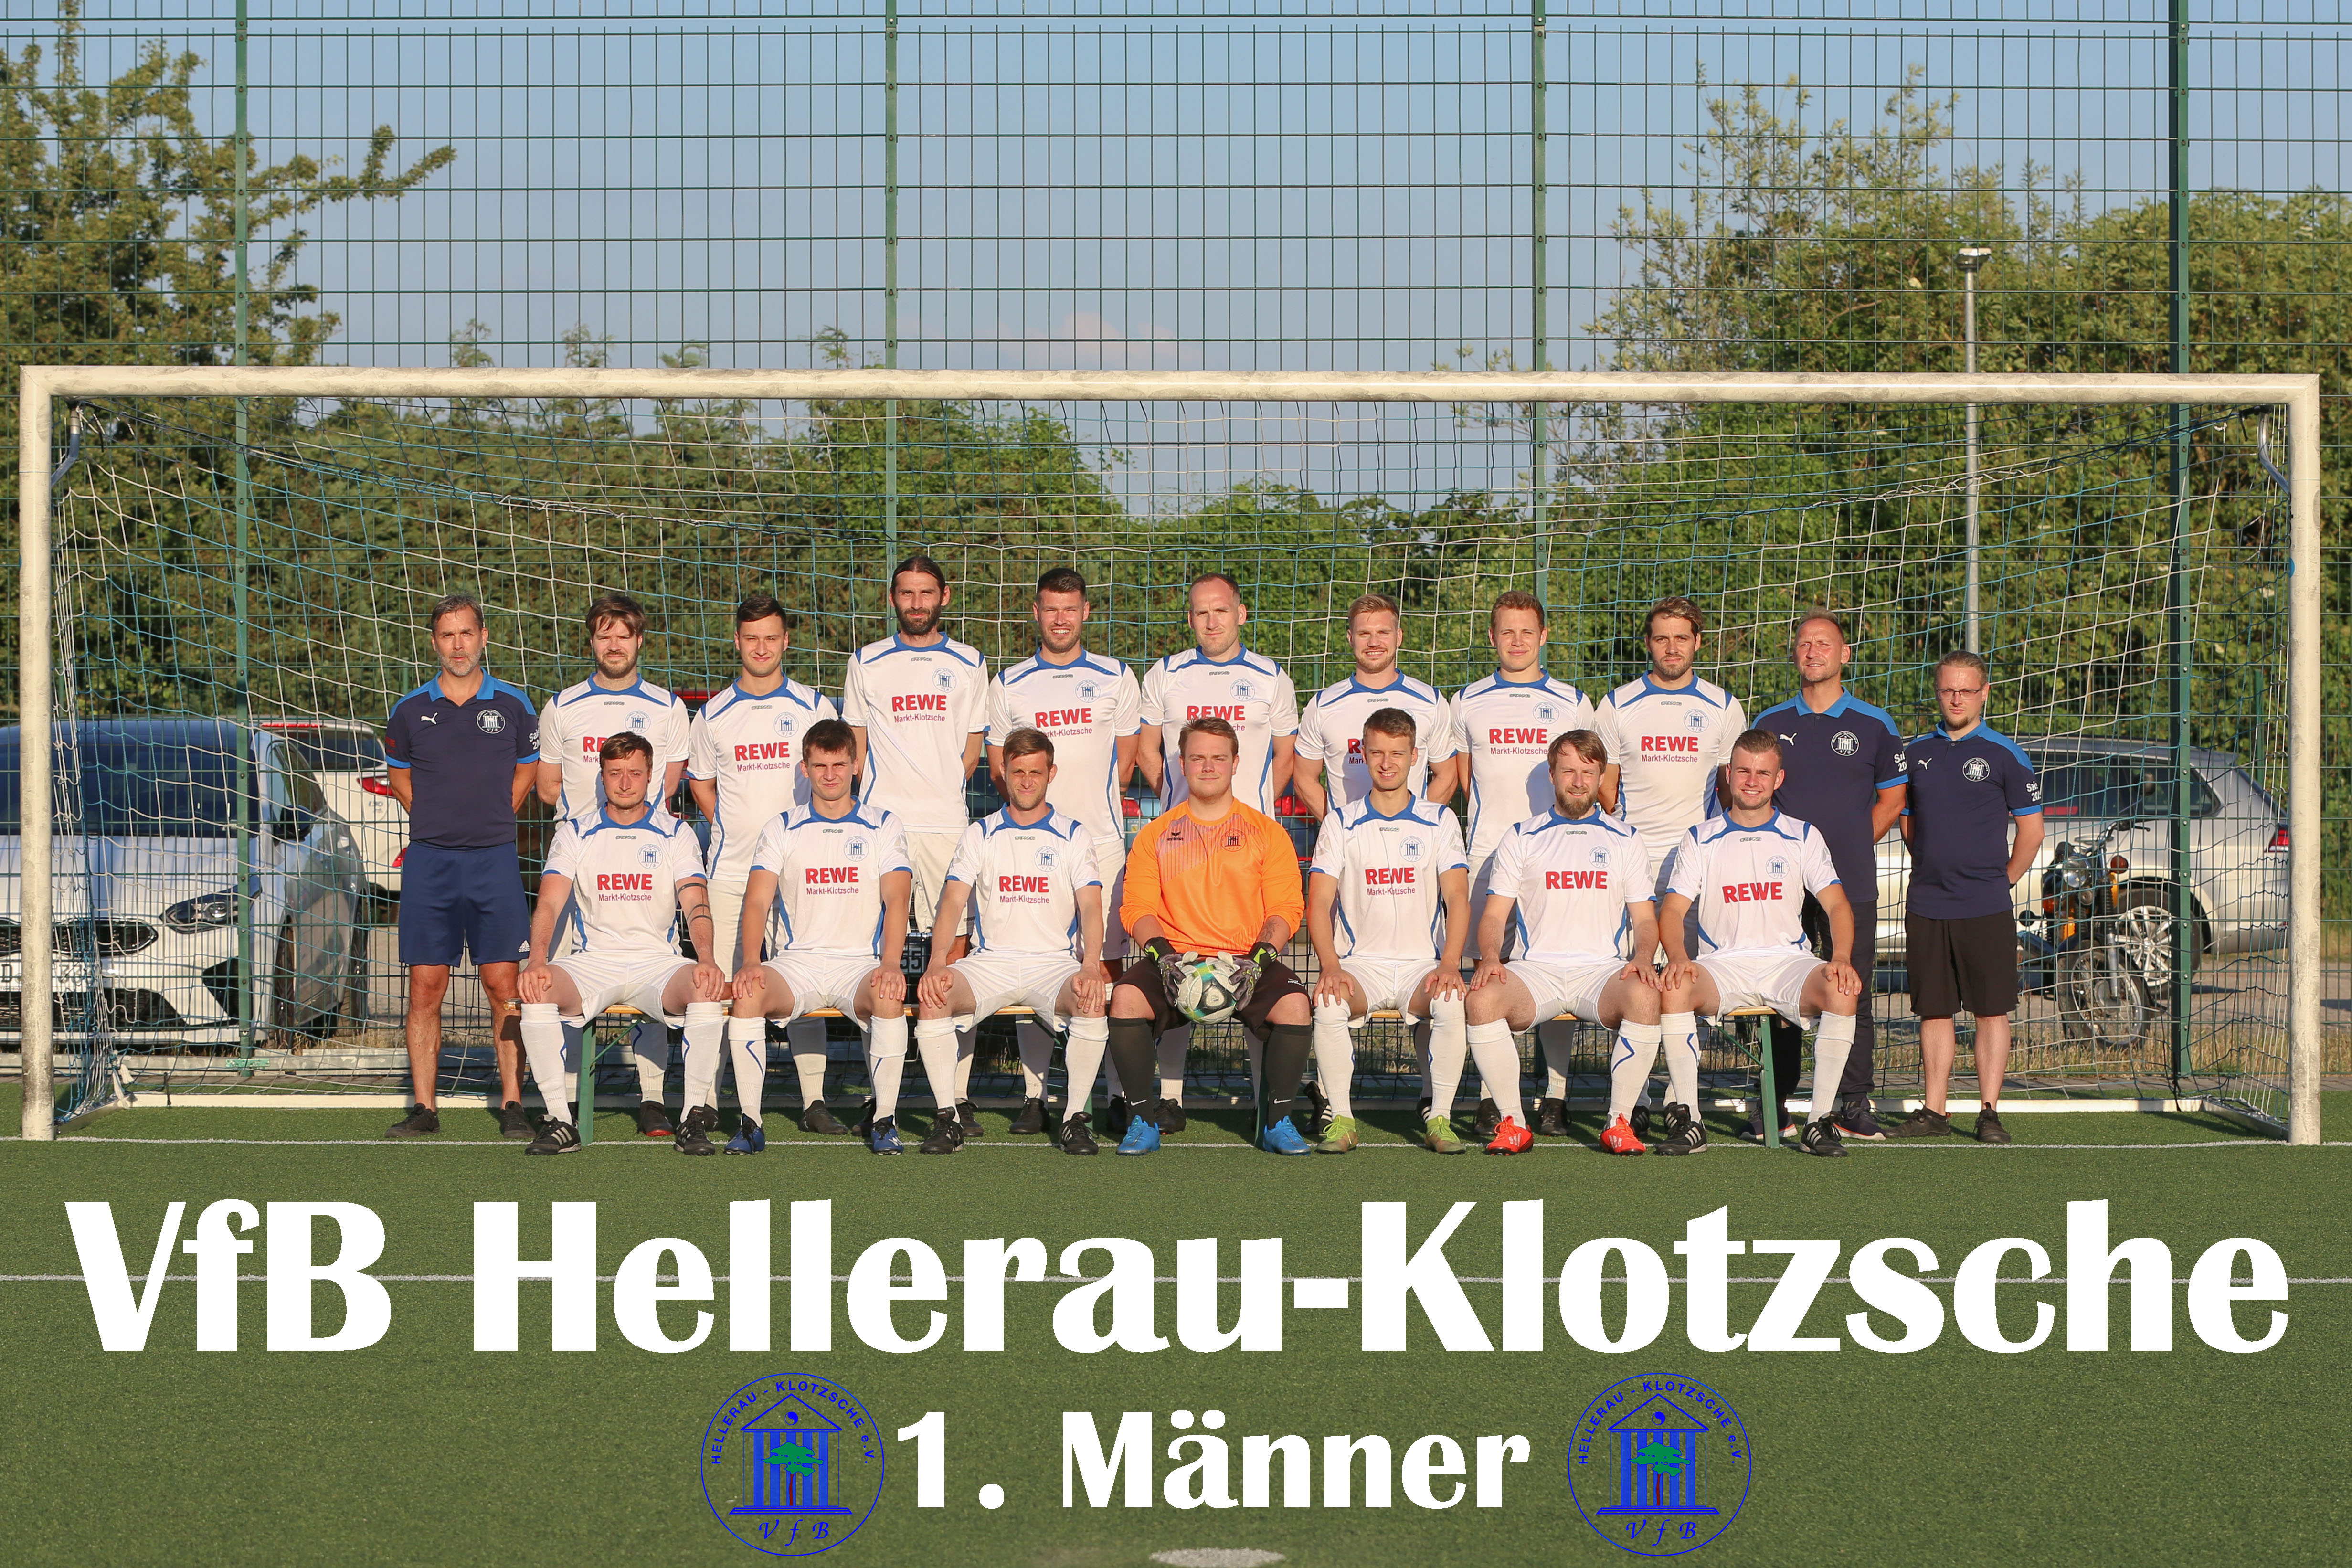 VfB Hellerau - Klotzsche e.V